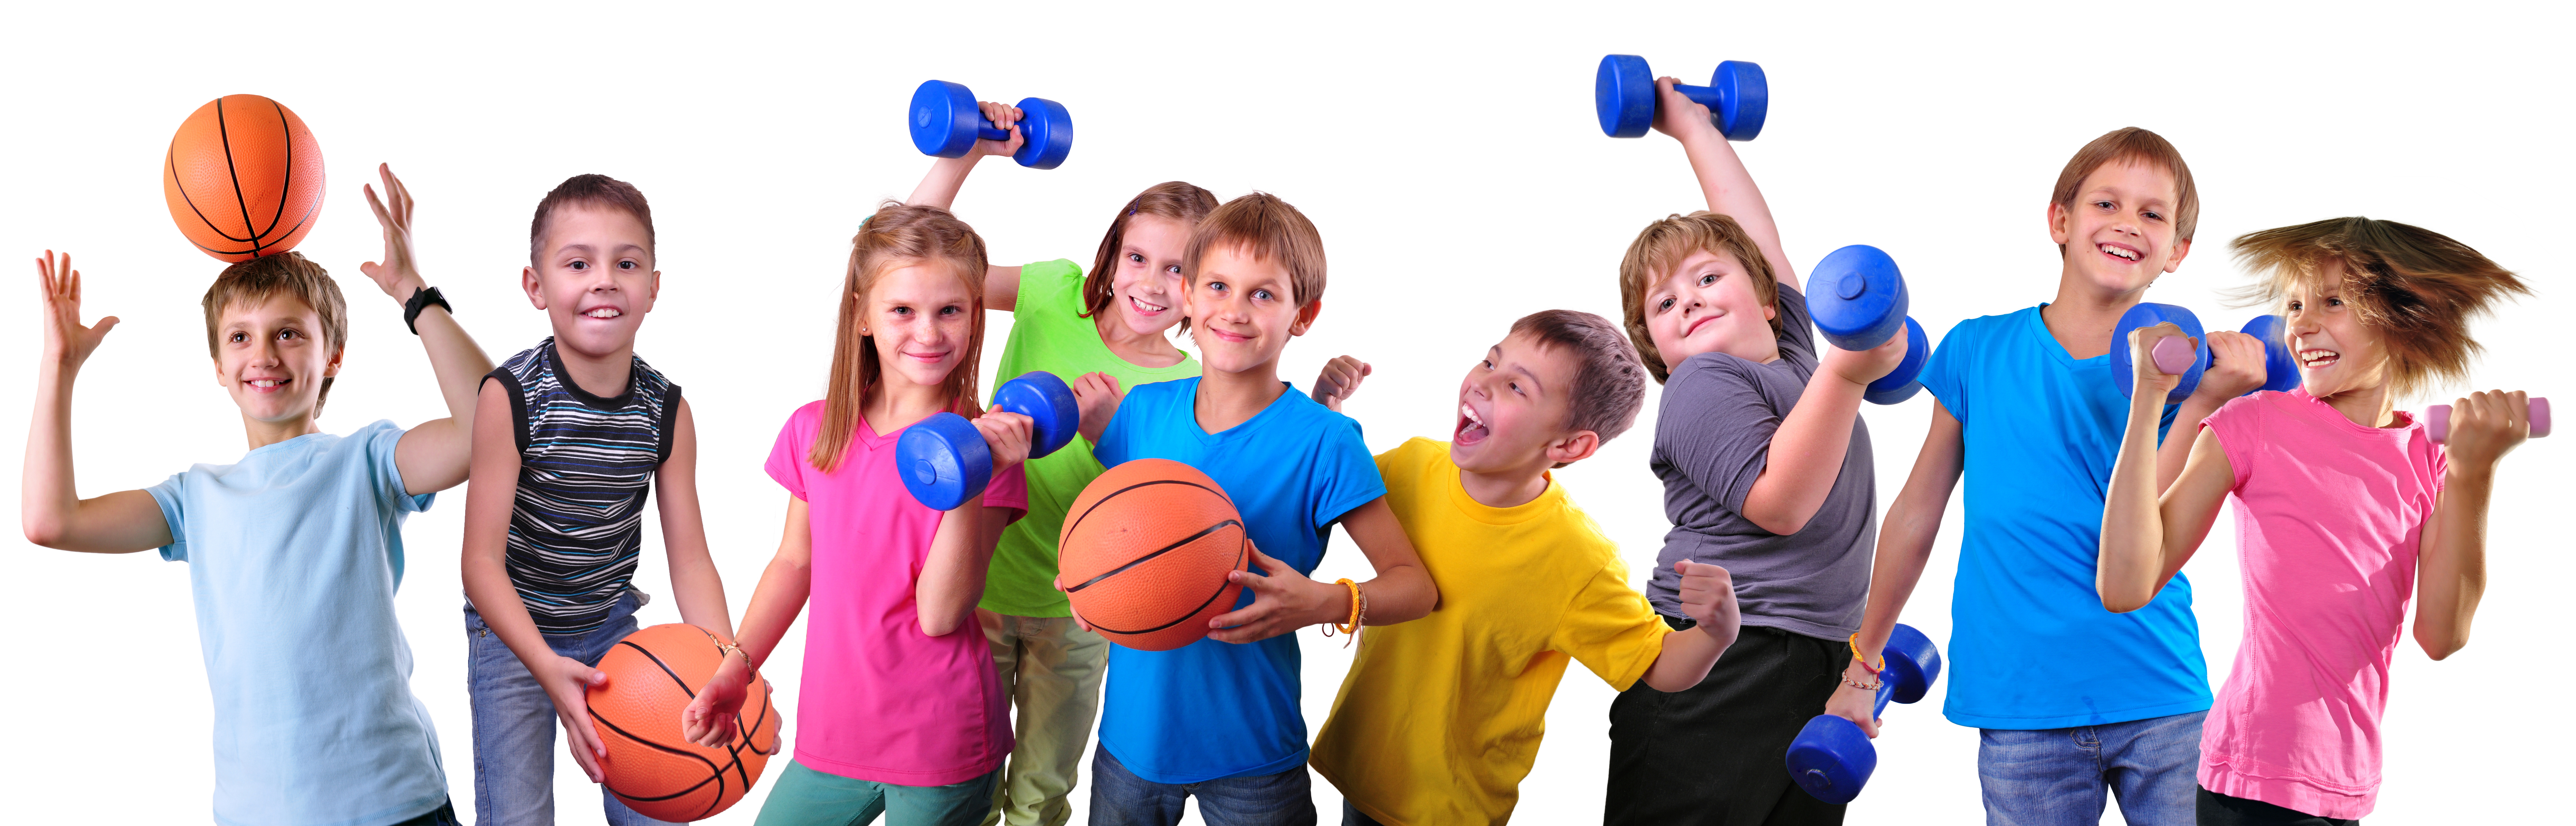 Das Bild zeigt 9 Kinder, die Basketbälle und Kurzhanteln in den Händen haben. Sie sind in Bewegung und lachen in die Kamera.